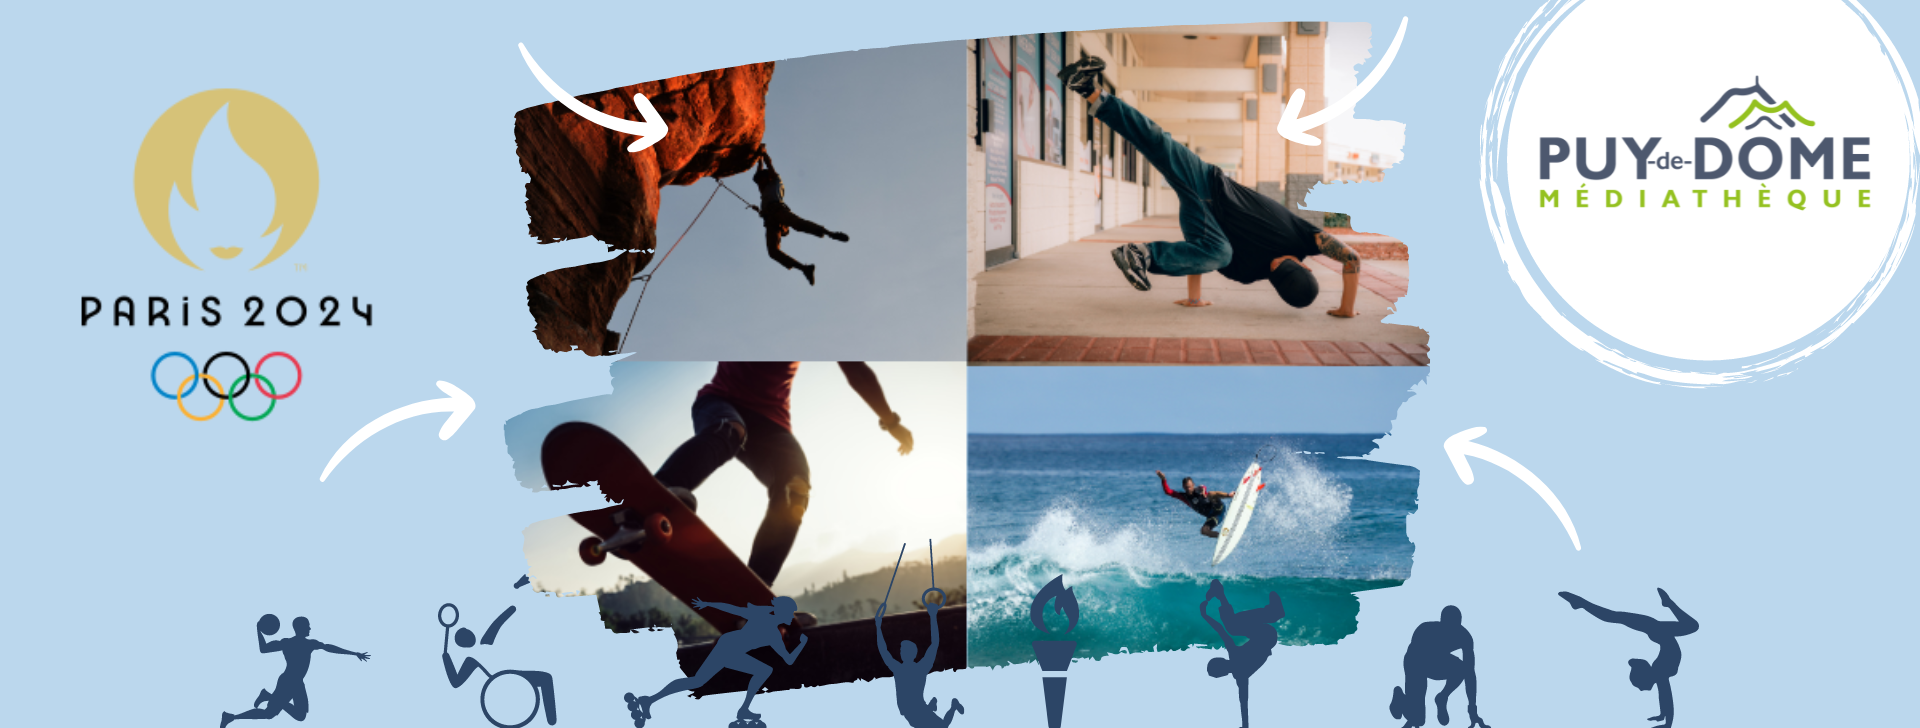 4 images représentant chacune un grimpeur, un skateur, un breakdanceur et un surfeur sur une vague, avec logo des JO PARIS 2024